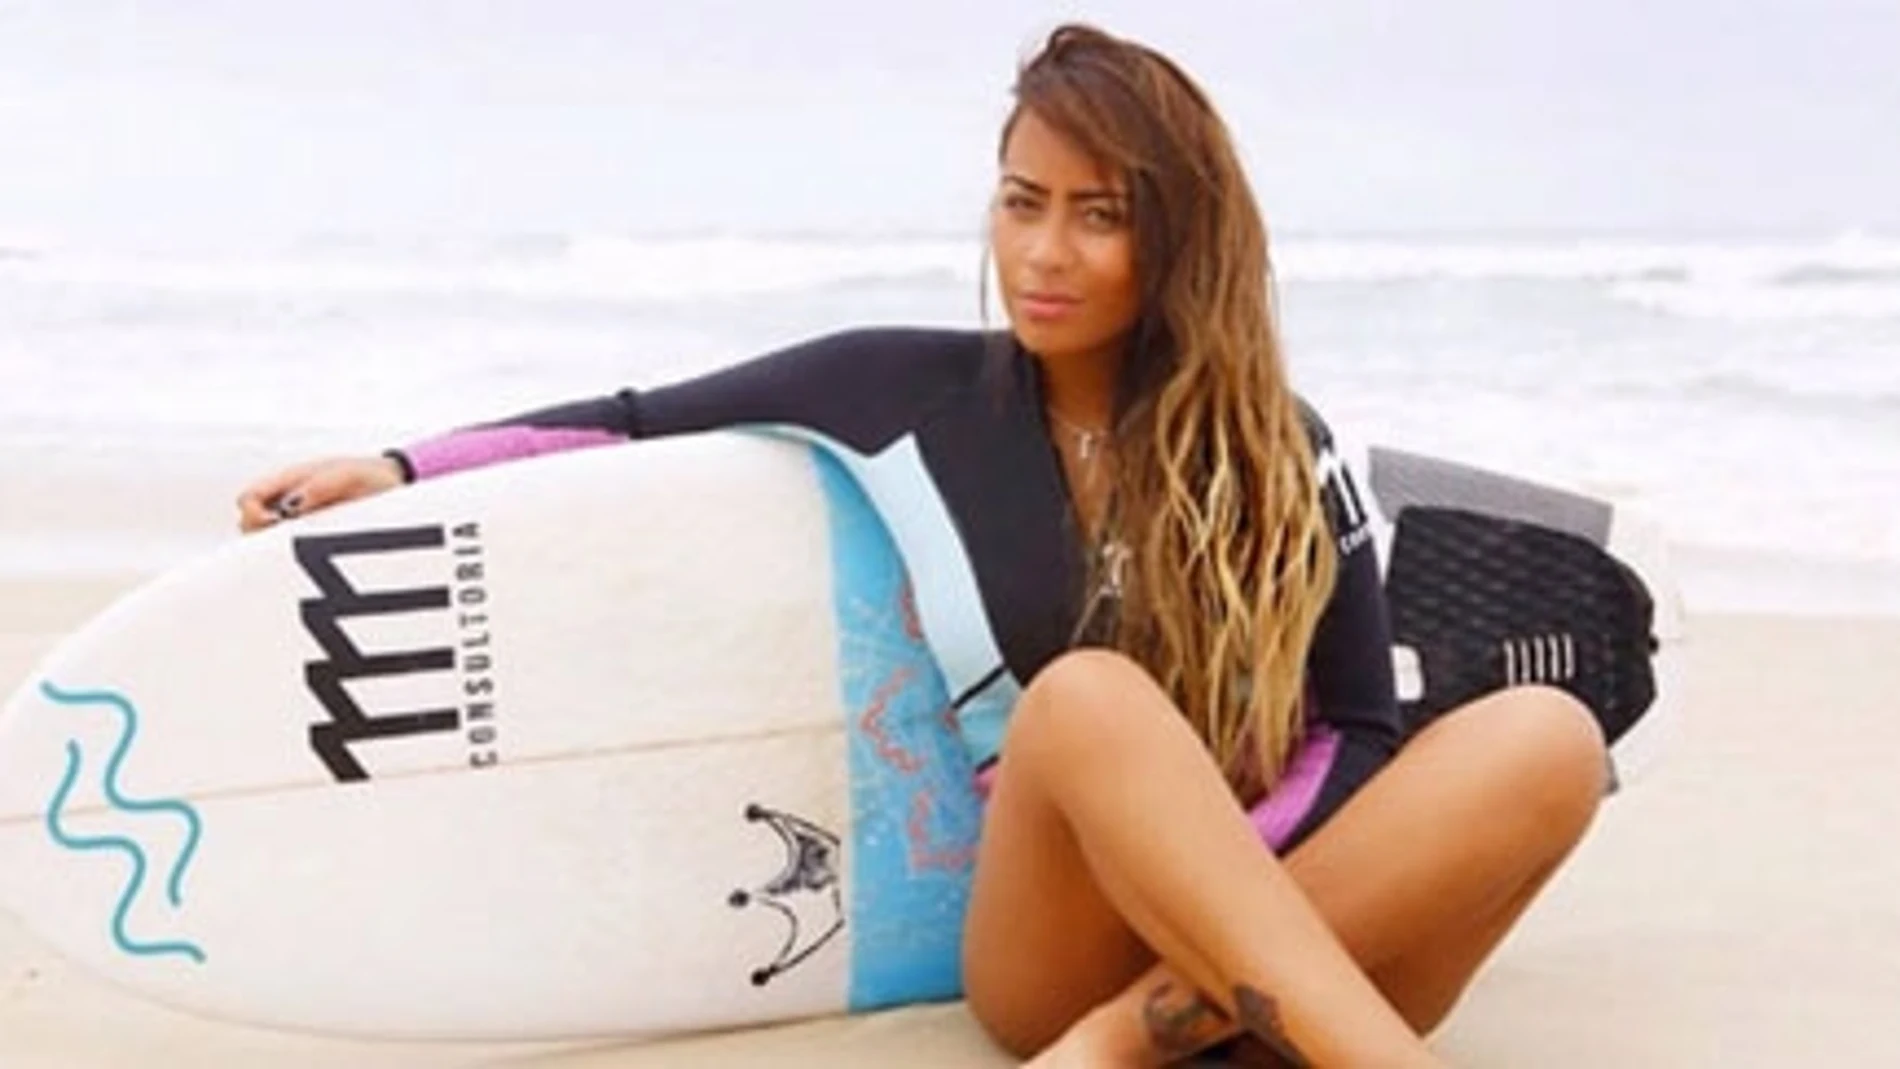 La guapa hermana del futbolista Neymar debuta como actriz en un videoclip